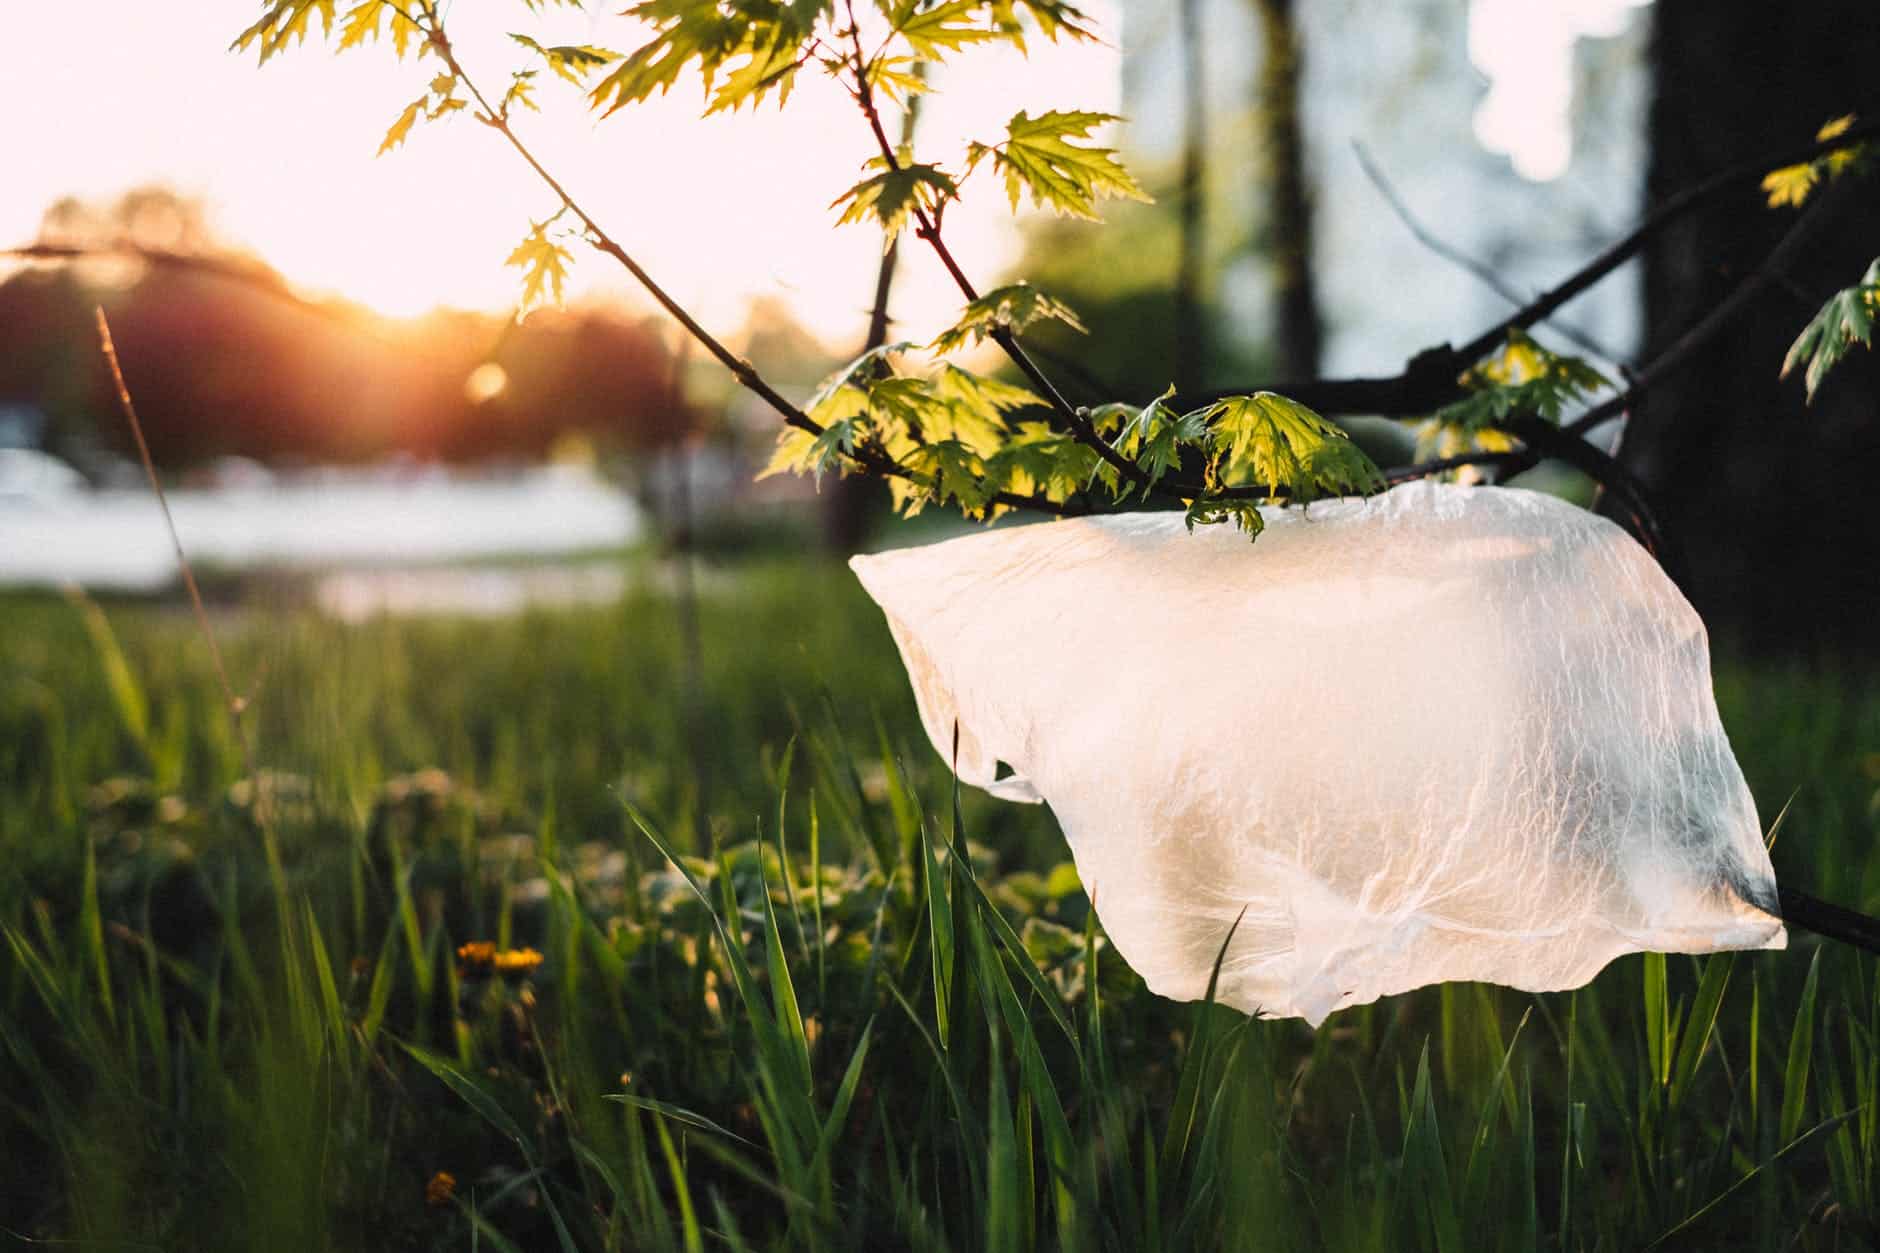 Plastic bag in nature